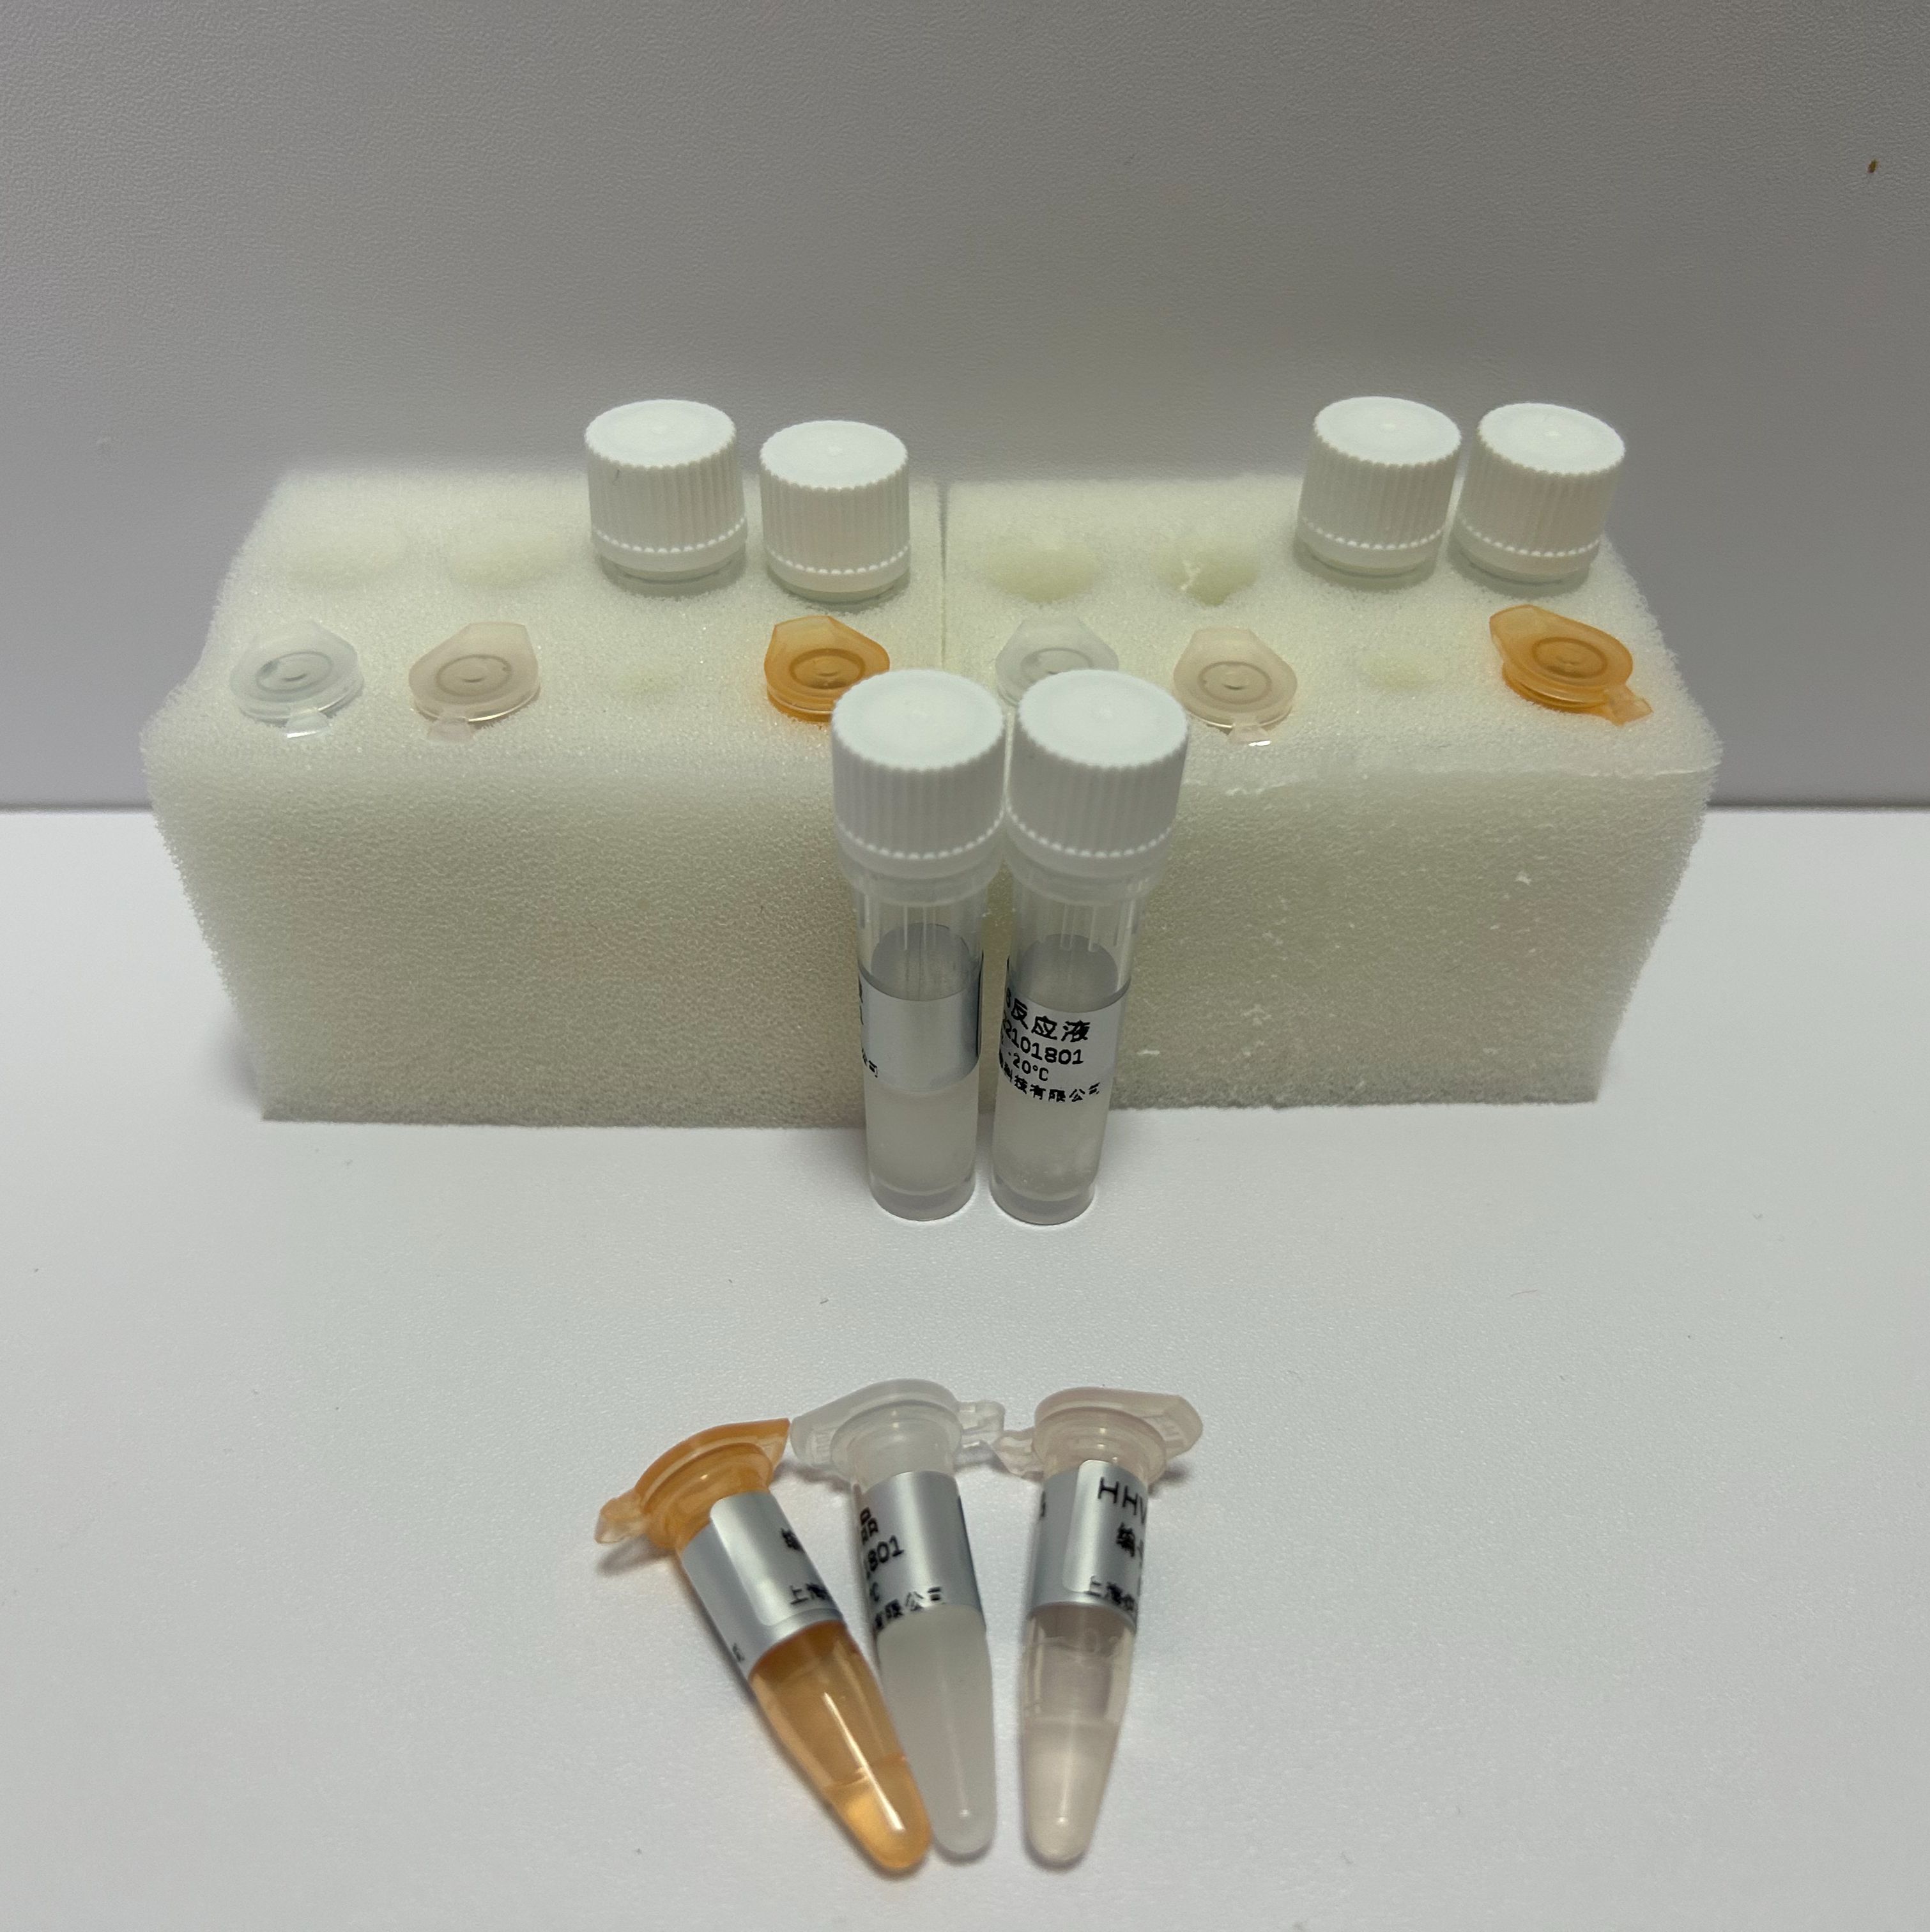 桔梗PCR鉴定试剂盒